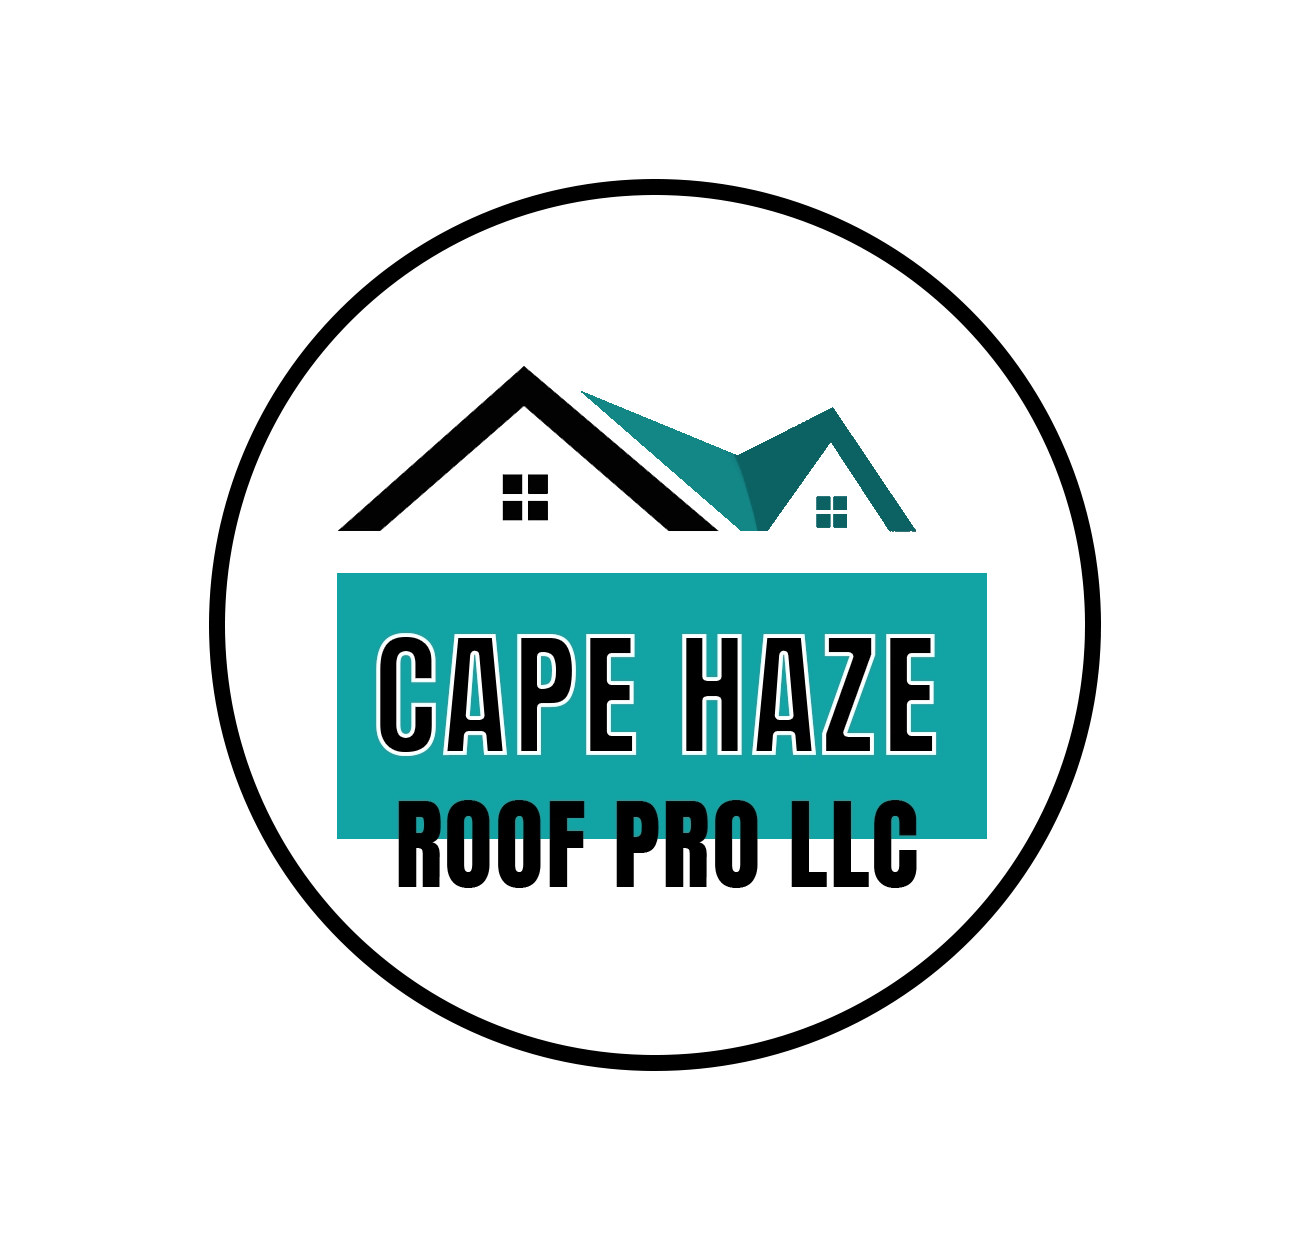 Cape Haze Roof Pro Logo